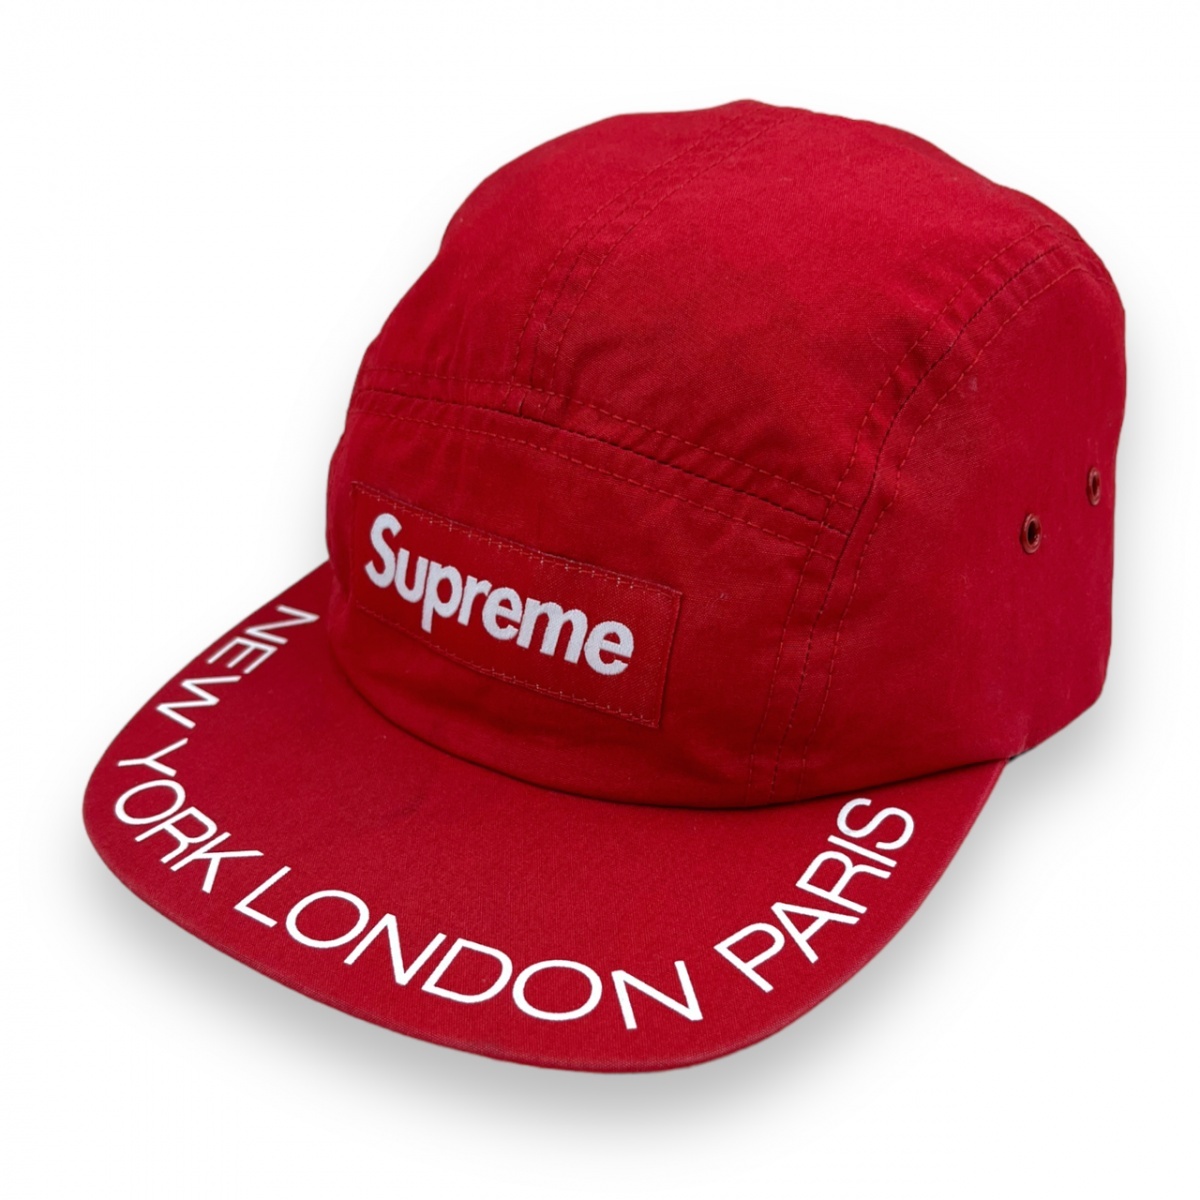 美品  コットン ジェット キャップ キャンプ 5パネル ボックスロゴ CAP PARIS LONDON YORK NEW シュプリーム SUPREME 18ss 帽子 レッド 服飾 帽子